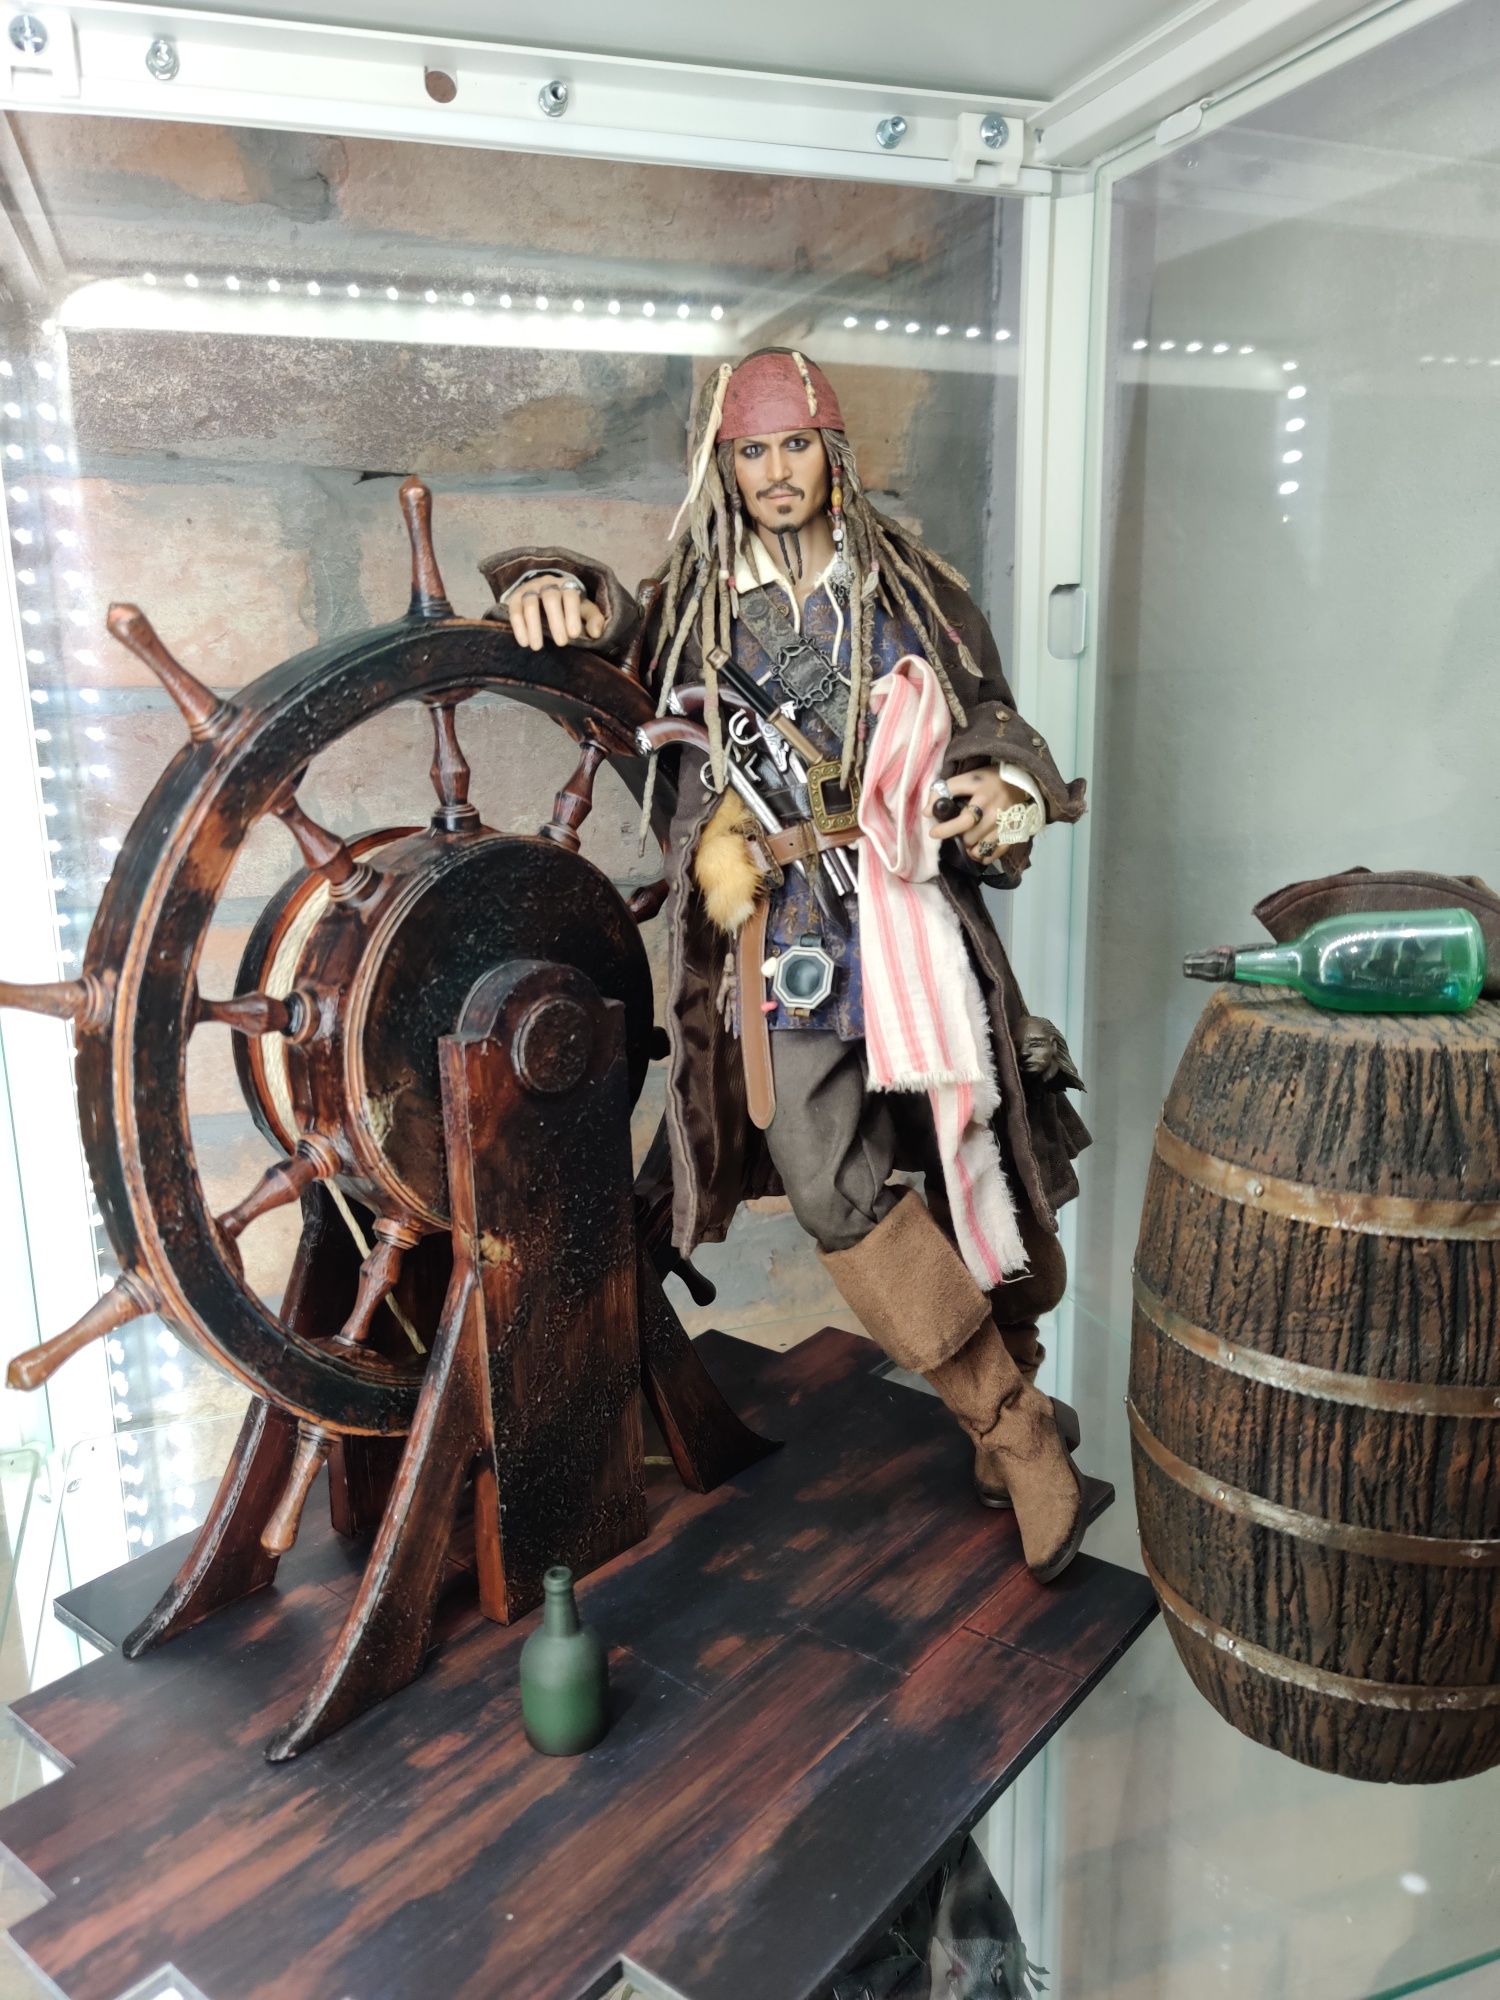 Hot Toys DX6 Jack Sparrow